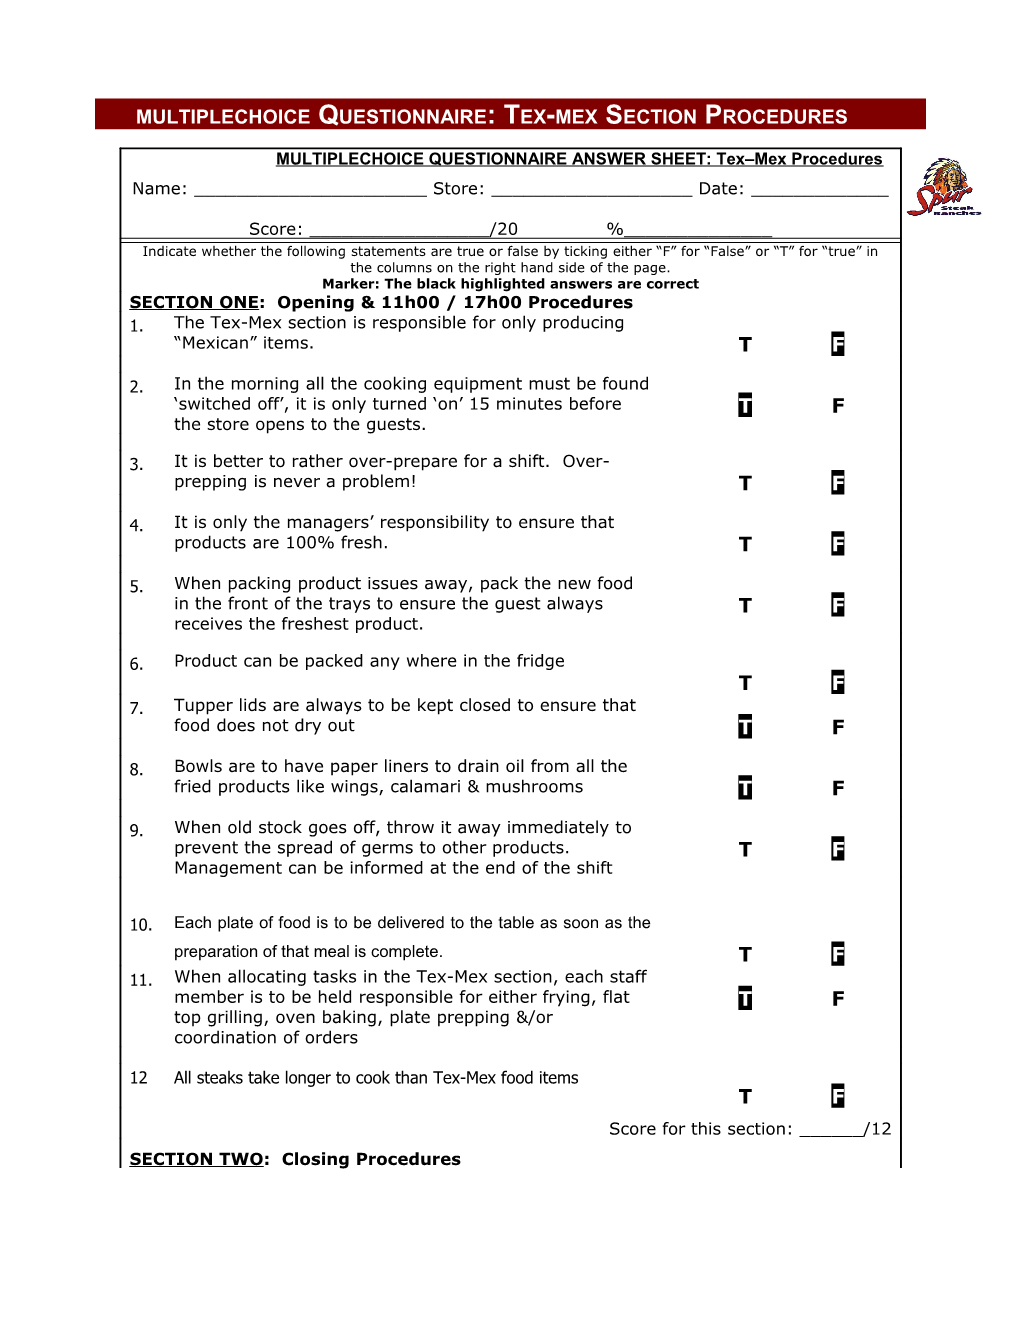 Multiplechoice Questionnaire: Tex-Mex Section Procedures